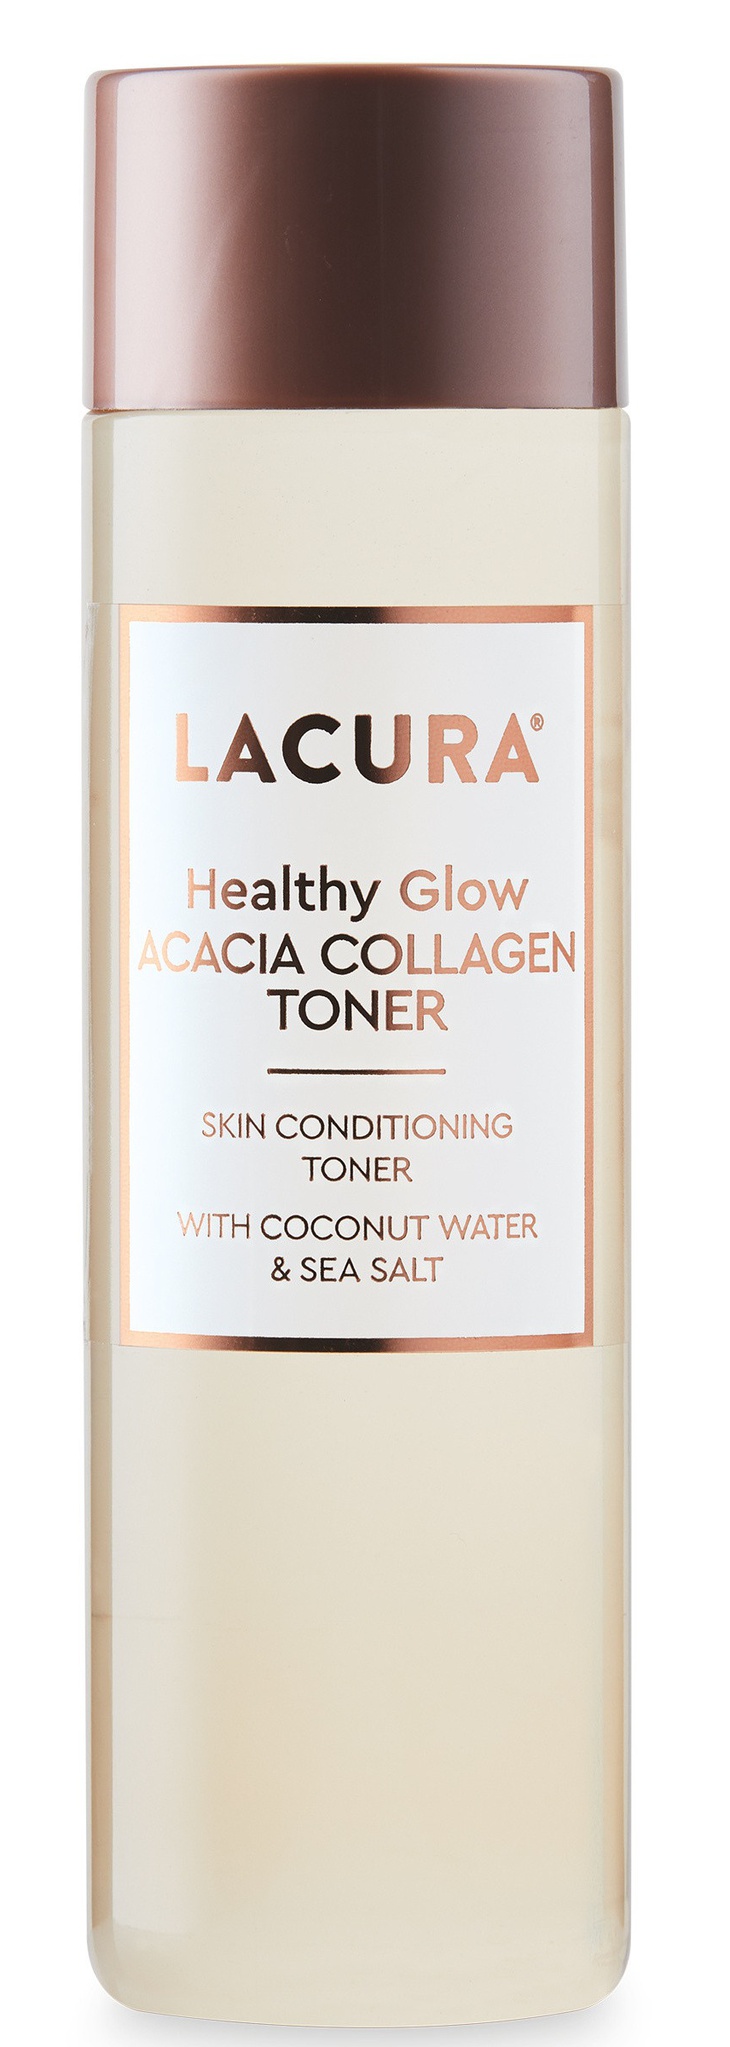 LACURA Healthy Glow Acacia Collagen Toner